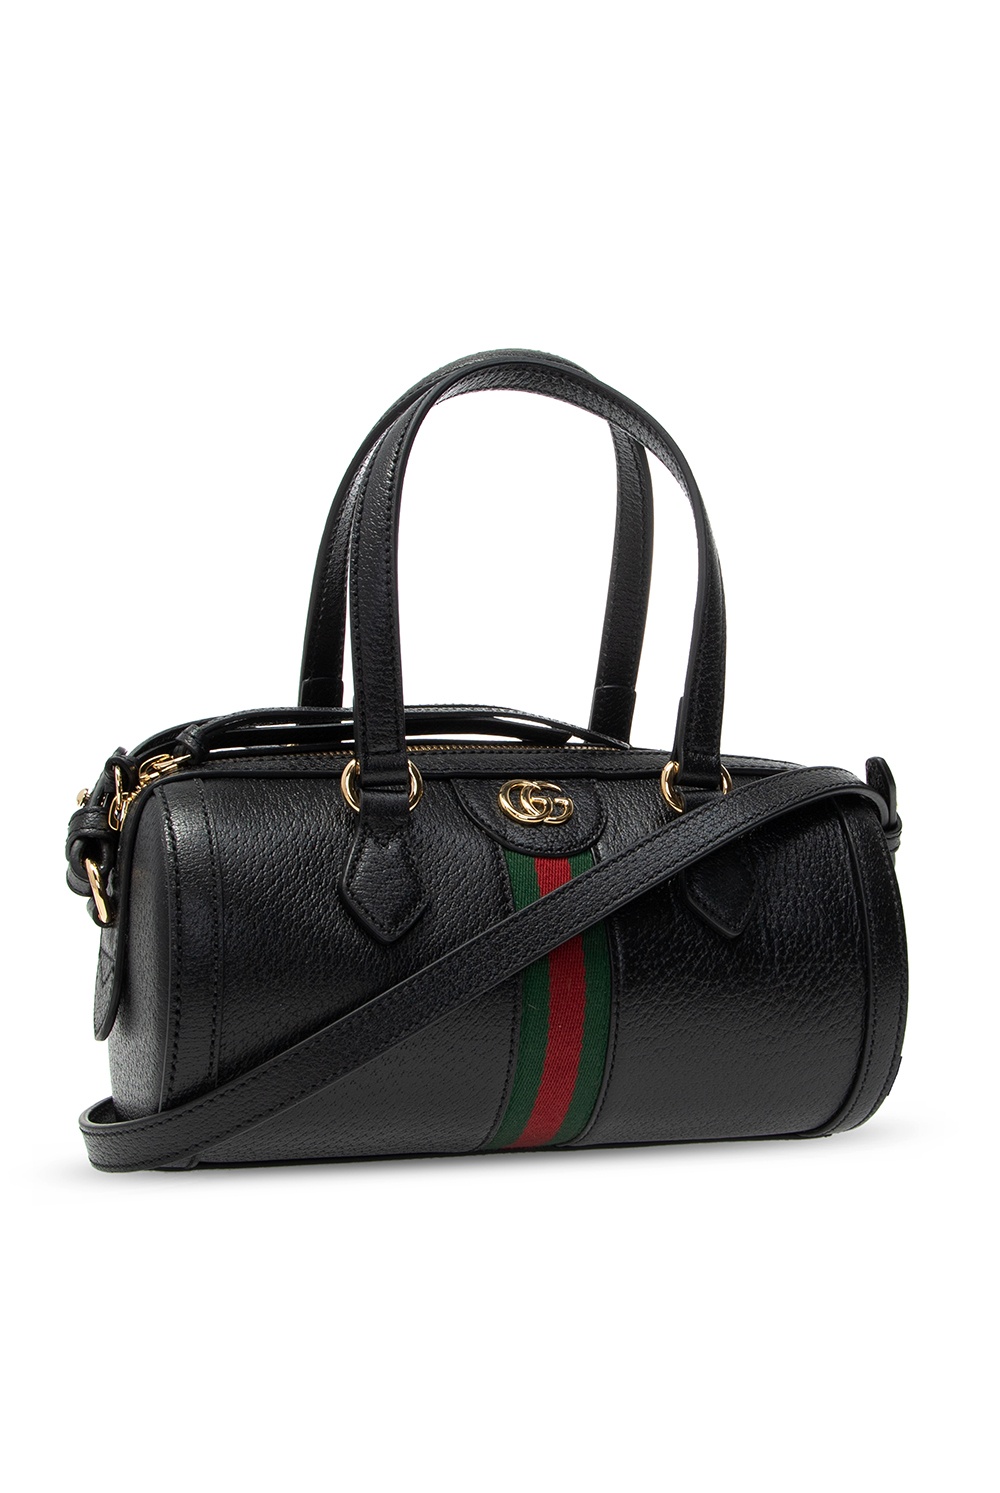 ‘Ophidia’ shoulder bag Gucci - Vitkac US